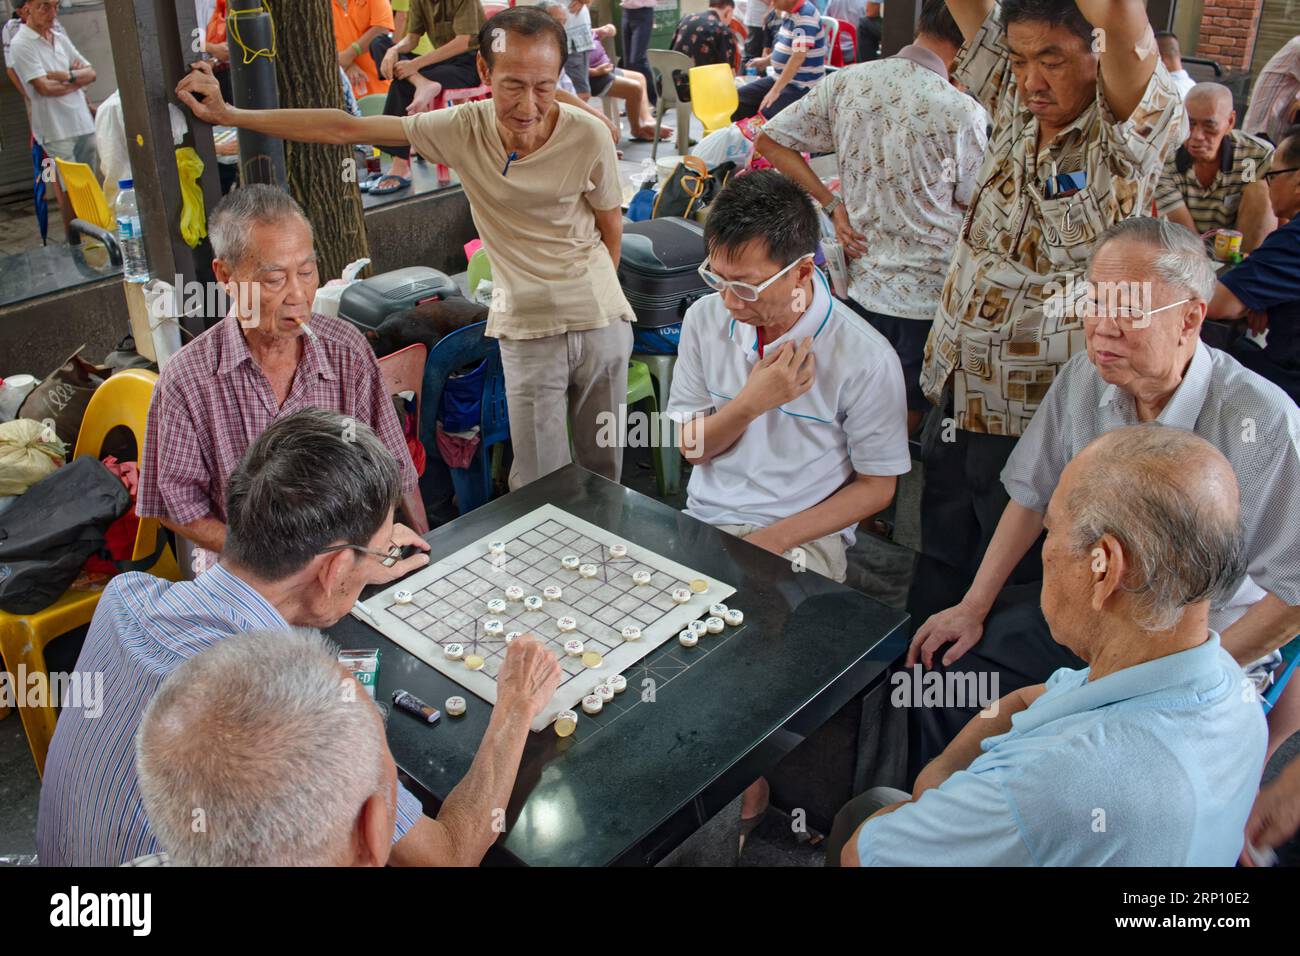 Ältere, pensionierte, ethnische Chinesen auf dem Kreta Ayer Square, Chinatown, Singapur, spielen eine chinesische Schachvariante, beobachtet von neugierigen Zuschauern Stockfoto